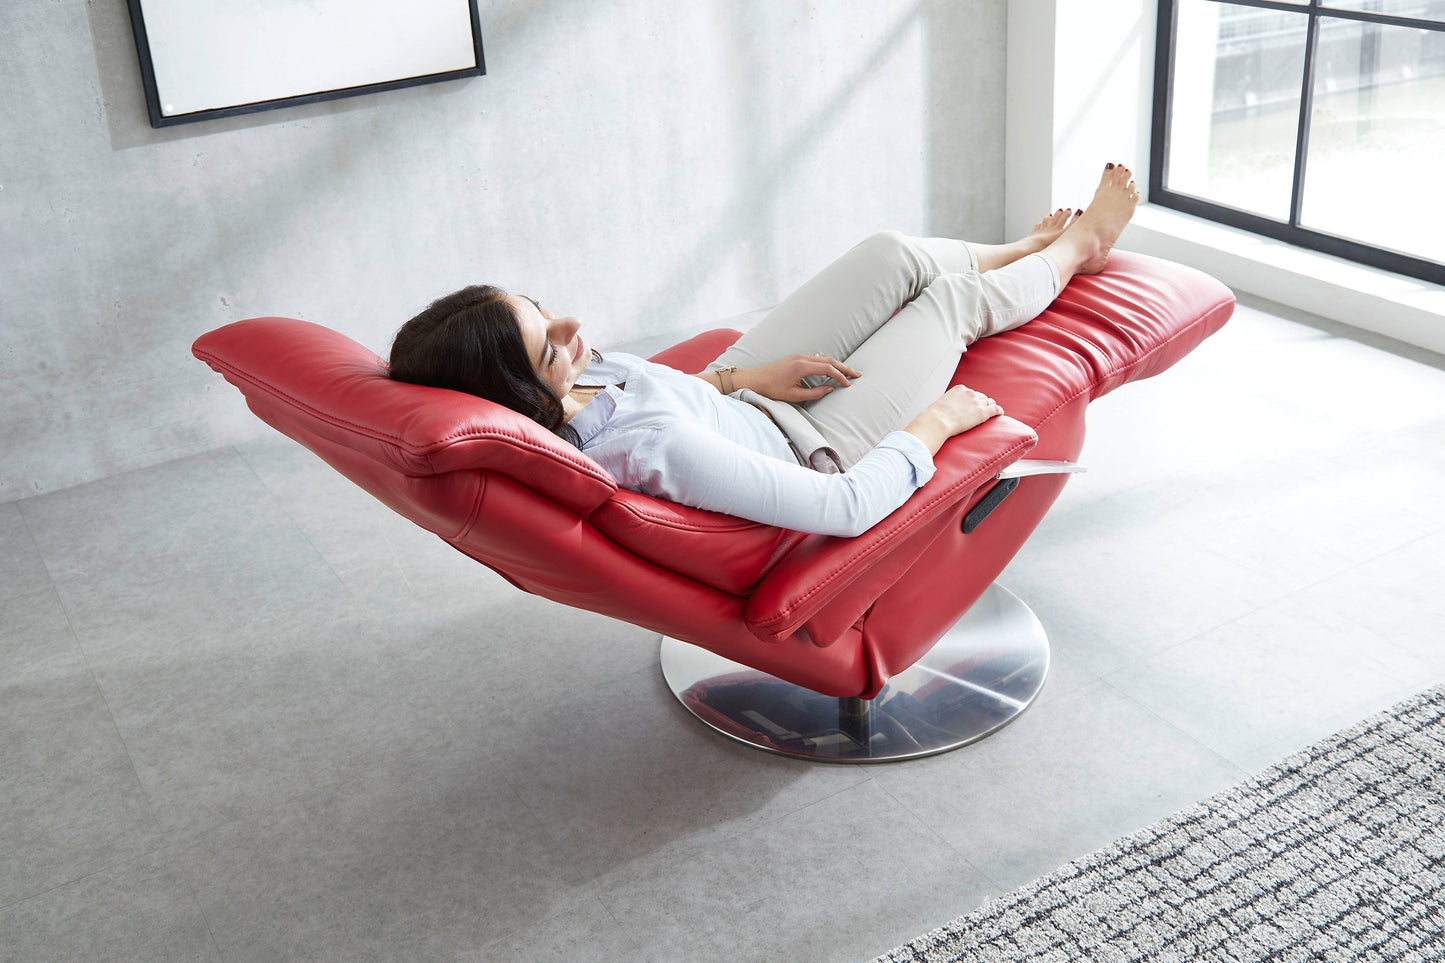 Leder Premium-Relaxsessel "MRS 1020" in modernem Design -  von meinRelaxsessel.de - 5 Jahre Grantie auf Relaxsessel GESCHENKT  Nur 1199 €! Kaufe jetzt bei meinRelaxsessel.de